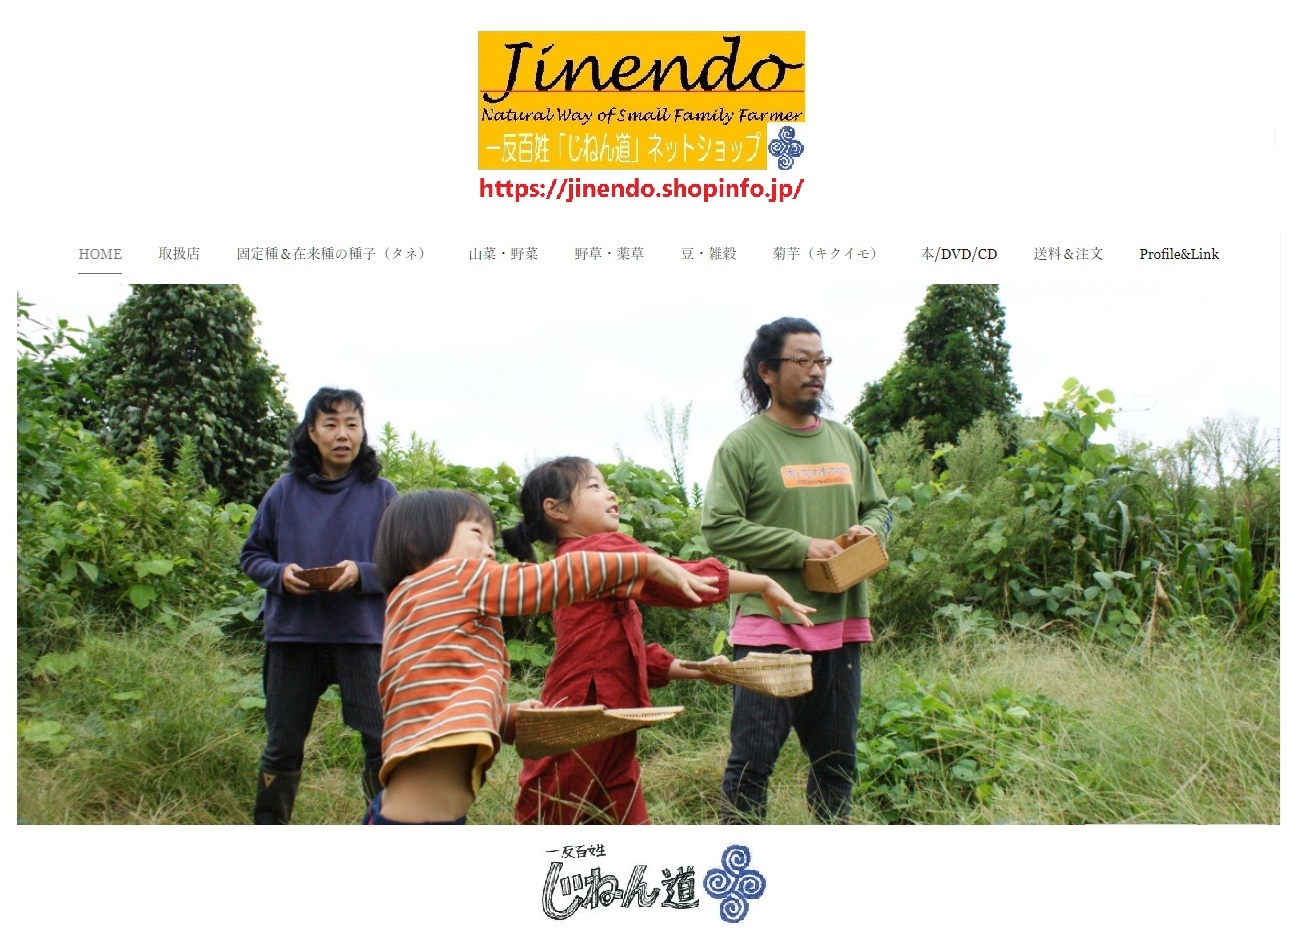 【お知らせ】一反百姓「じねん道」【Jinendo NetShop】が移動しました⇒https://jinendo.shopinfo.jp/_c0113566_09575022.jpg